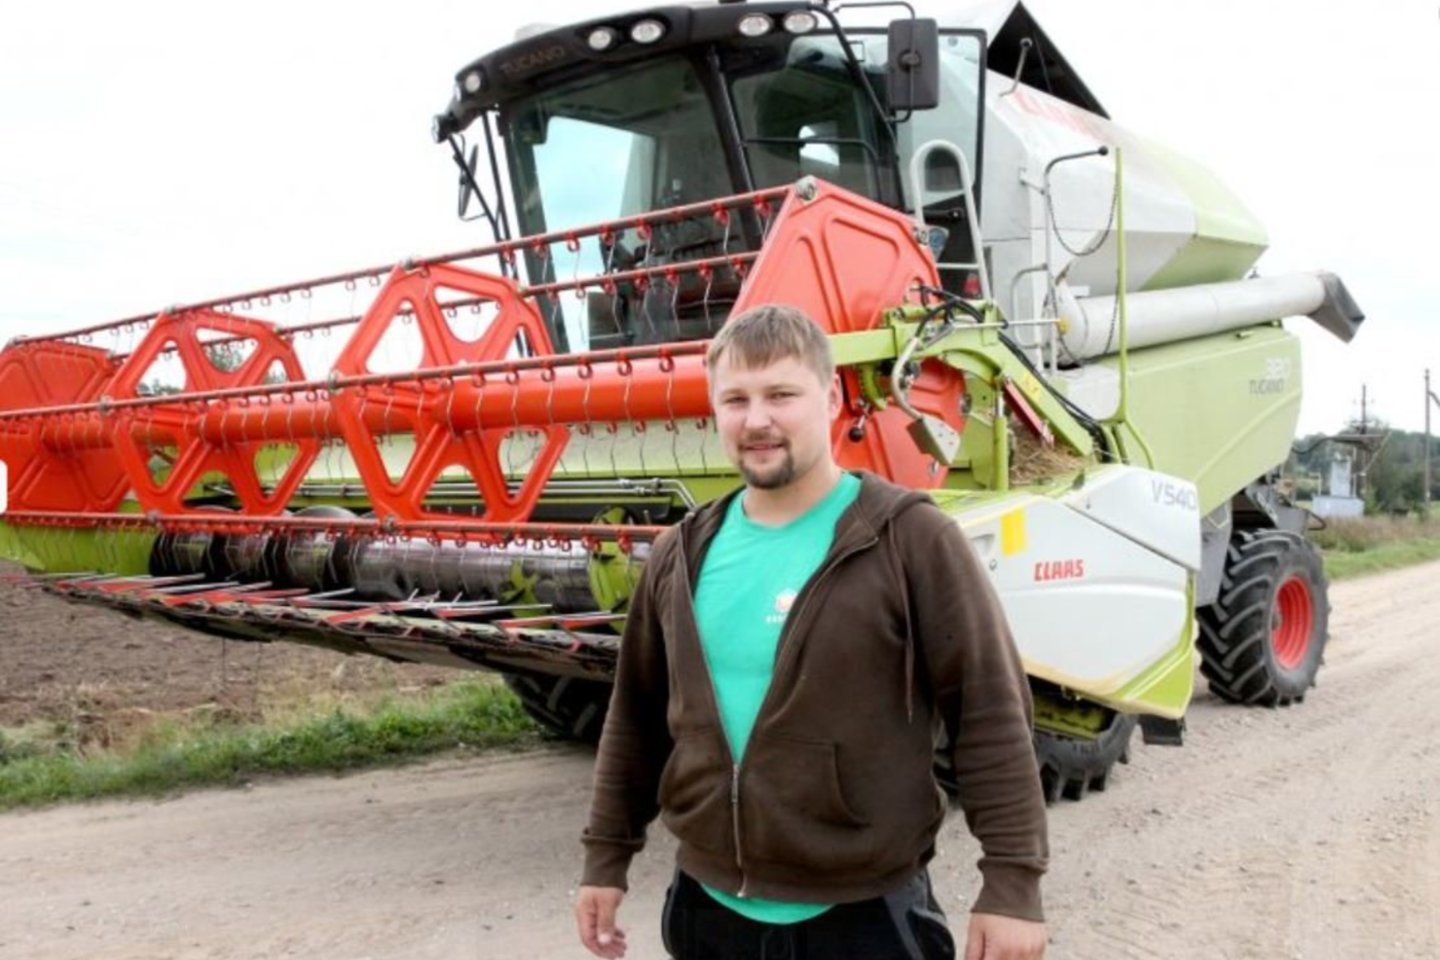 Ūkininkas J.Mikalauskas ištaiko laiko ir automobilių lenktynėms, jei varžybos svarbios, derliaus nuėmimo darbai stoja.<br>A.Švelnos nuotr.